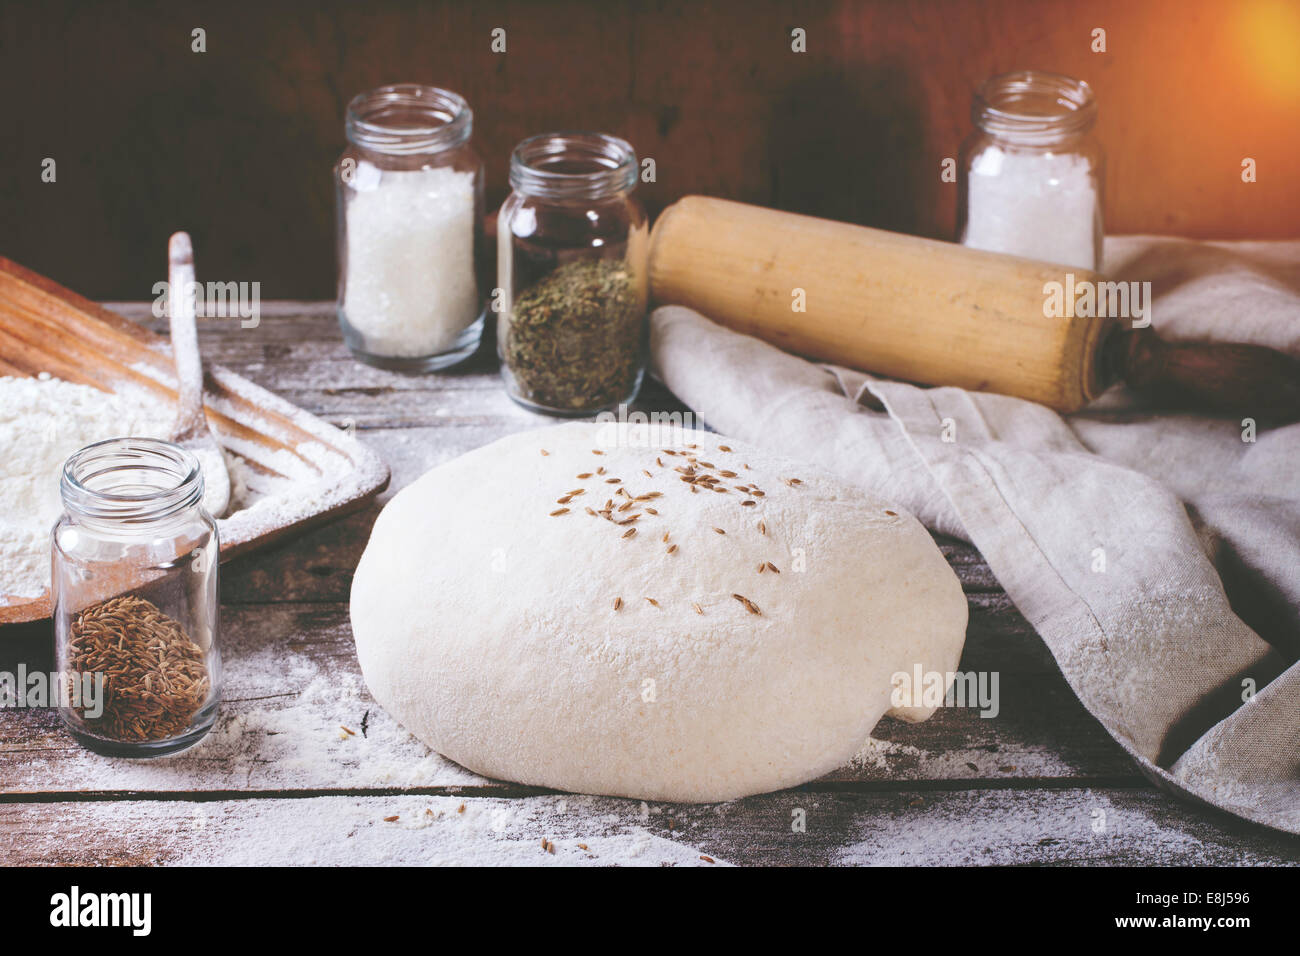 Brot backen. Teig auf Holztisch mit Mehl, Nudelholz und Gläser mit backing-Zutaten. Mit Retro-Filter-Effekt Stockfoto